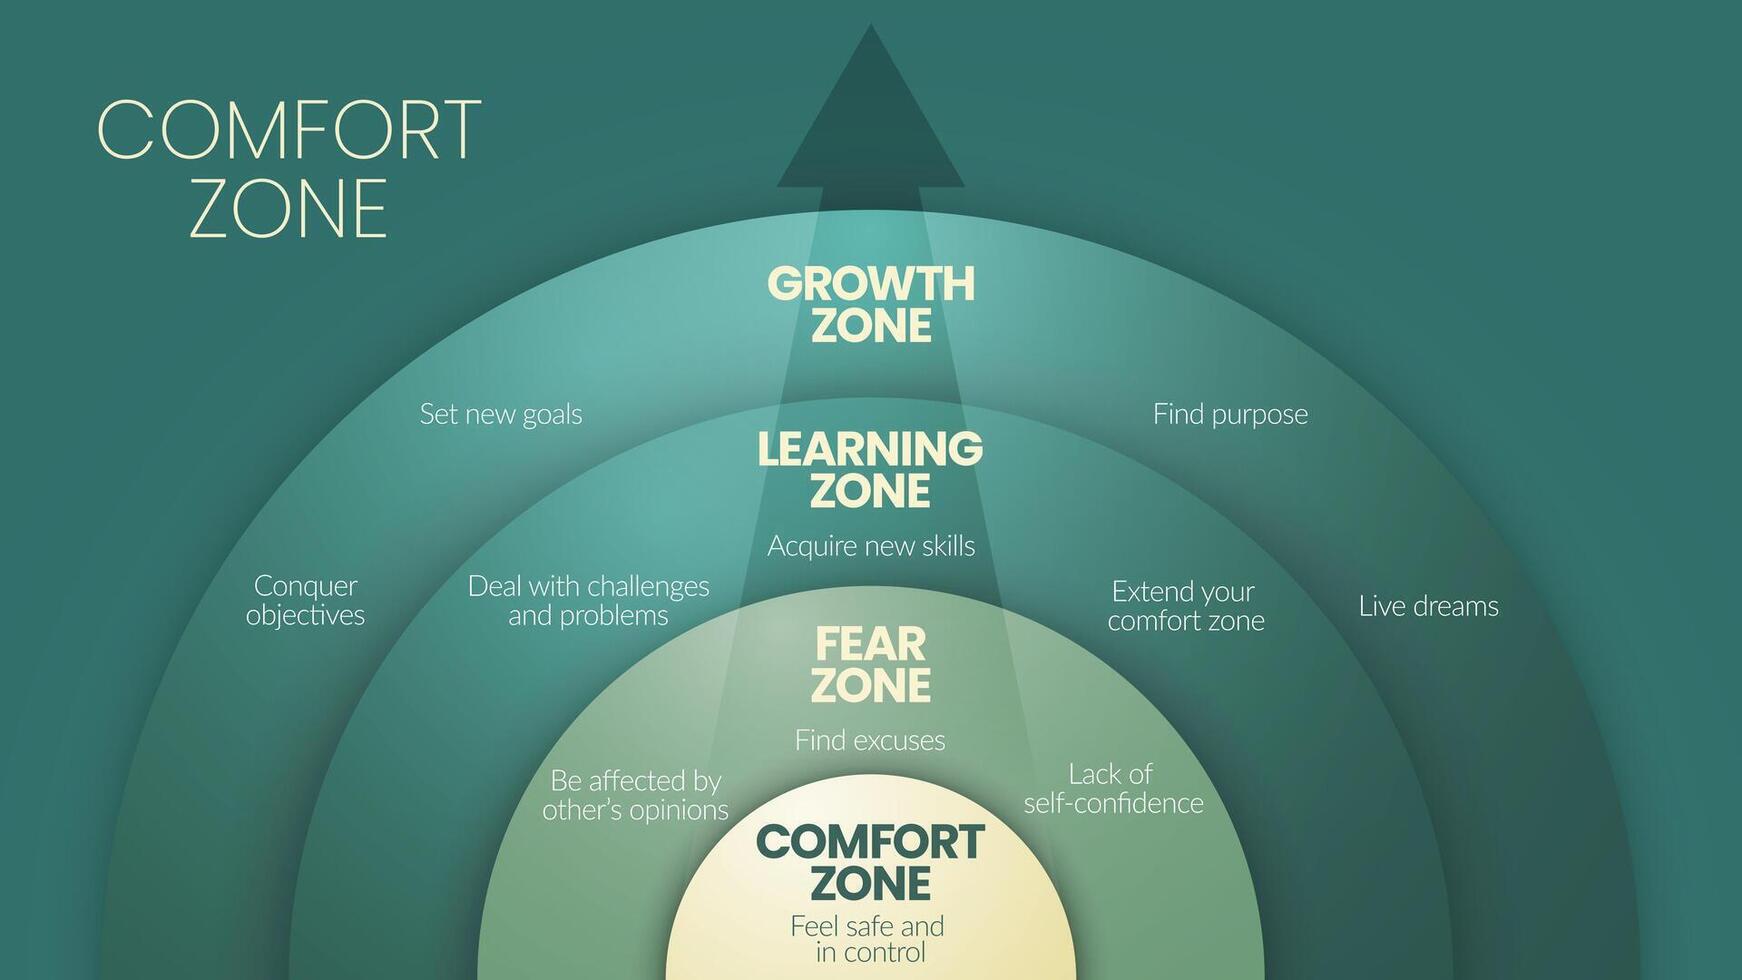 el comodidad zona circulo diagrama infografía modelo es un comportamiento modelo o mental estado en cuales persona siente familiar, tiene 4 4 niveles a analizar tal como comodidad zona, miedo, aprendizaje y crecimiento zona. vector